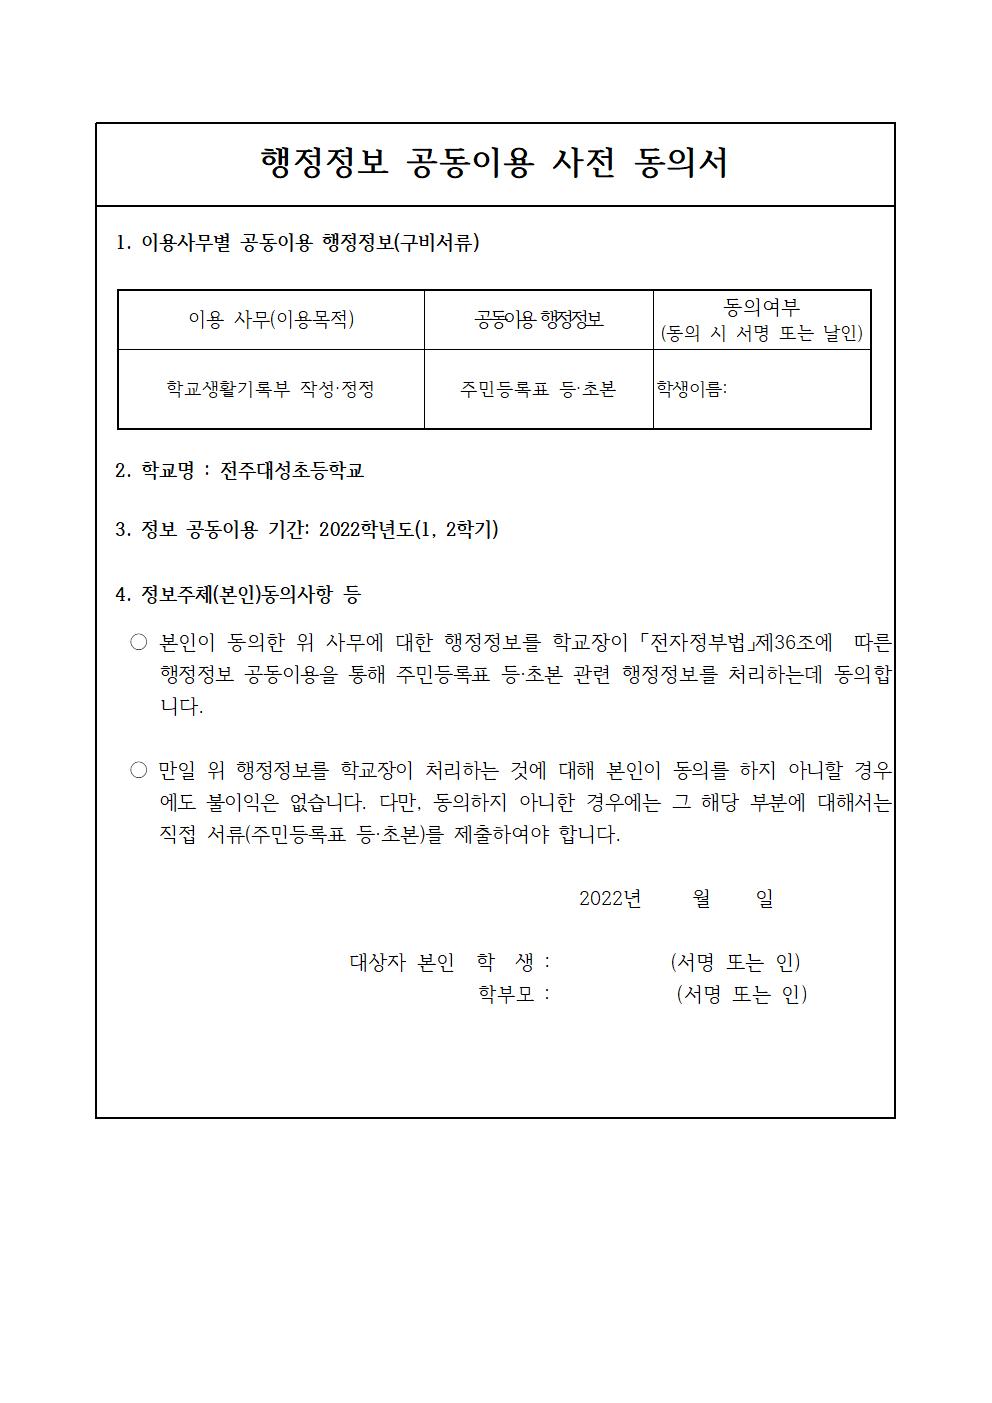 제11호-2022학년도 개인정보수집 동의서 가정통신문006